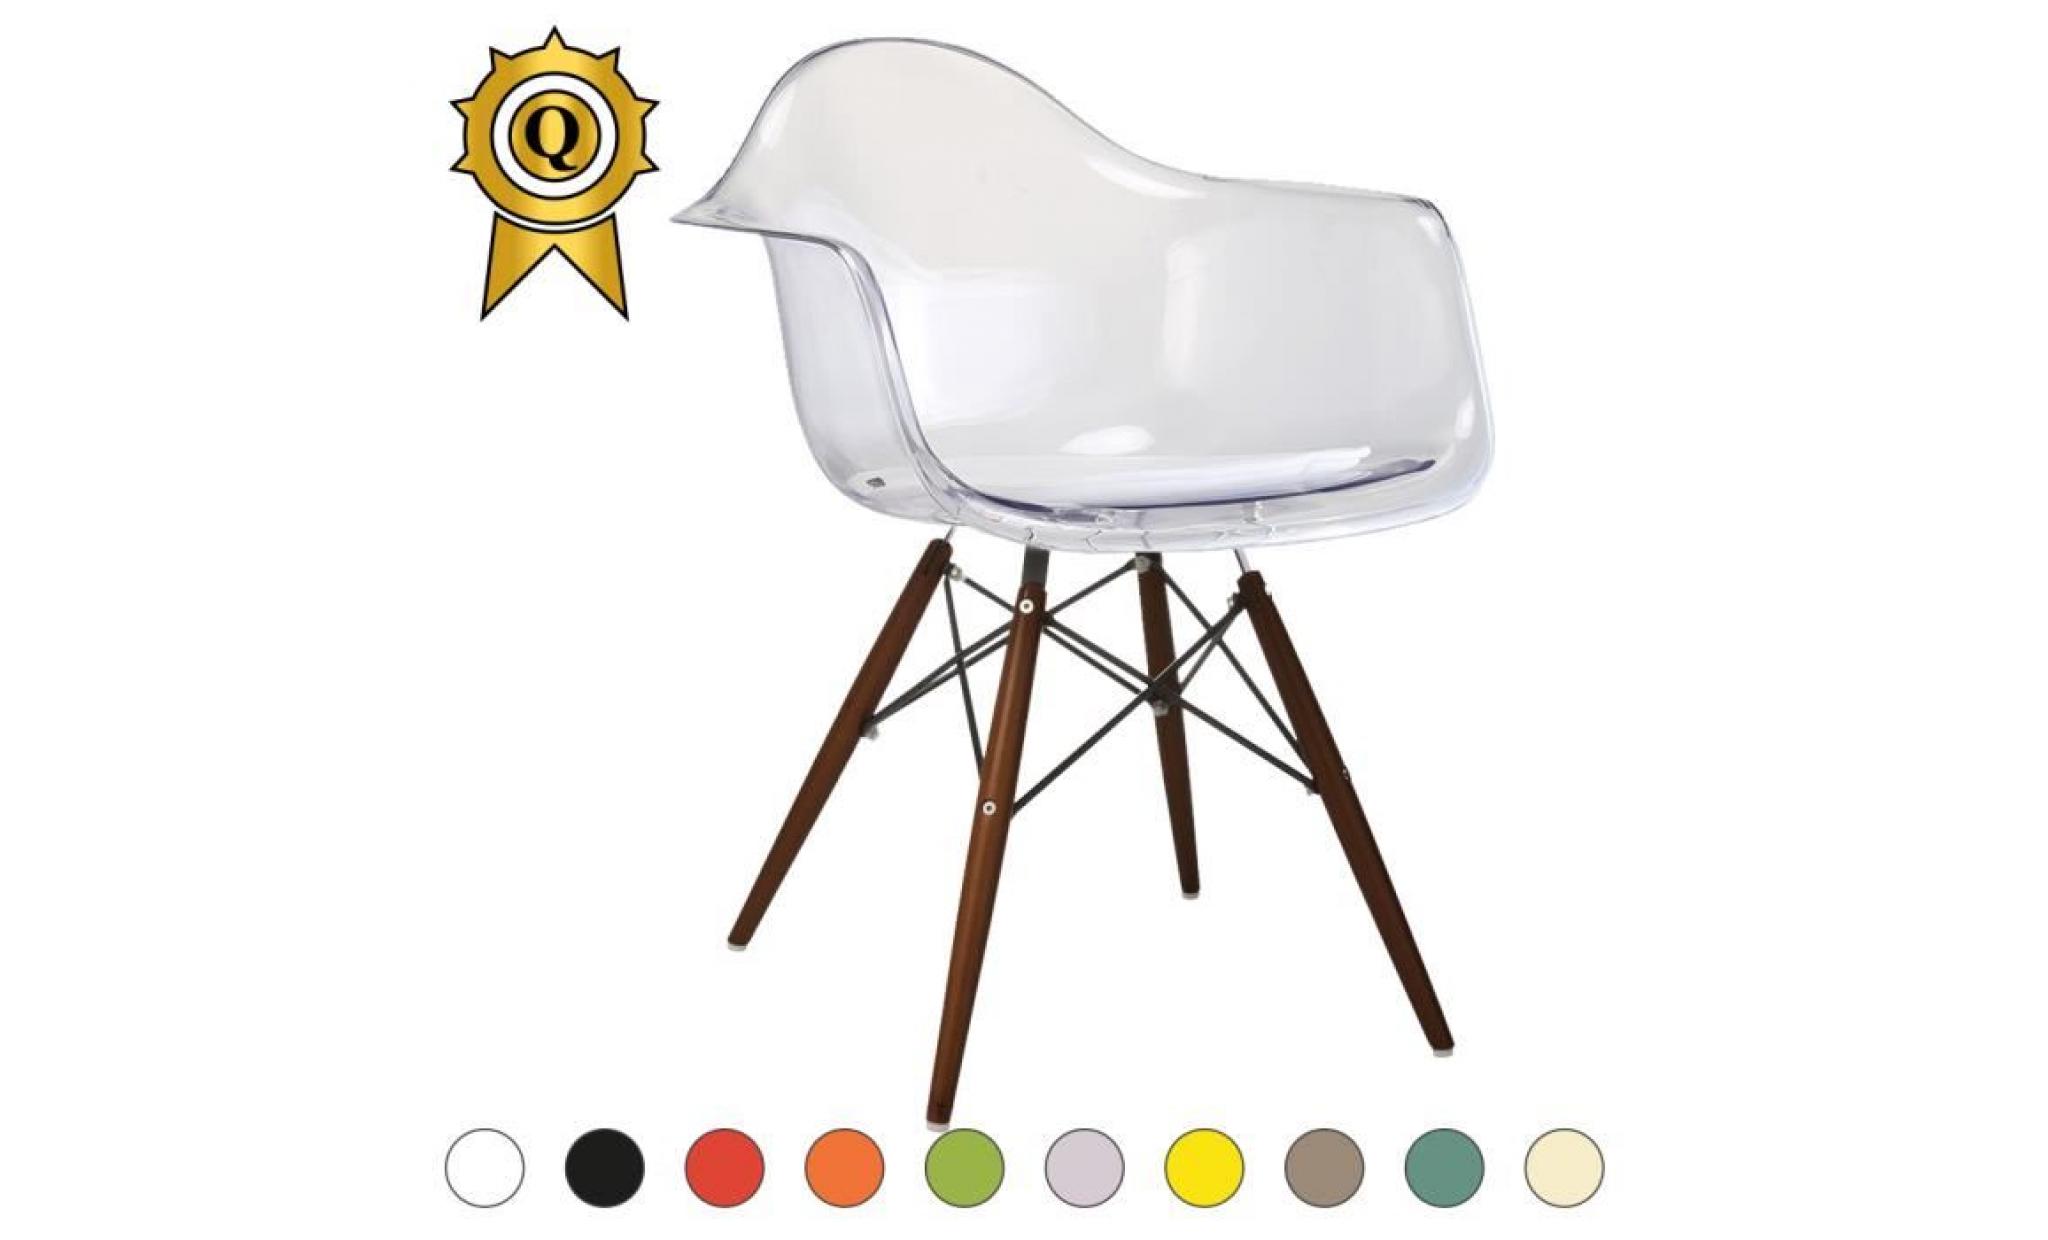 1 x fauteuil design retro style eames daw hauteur 48cm pieds en bois vernis noyer assise violet mobistyl®